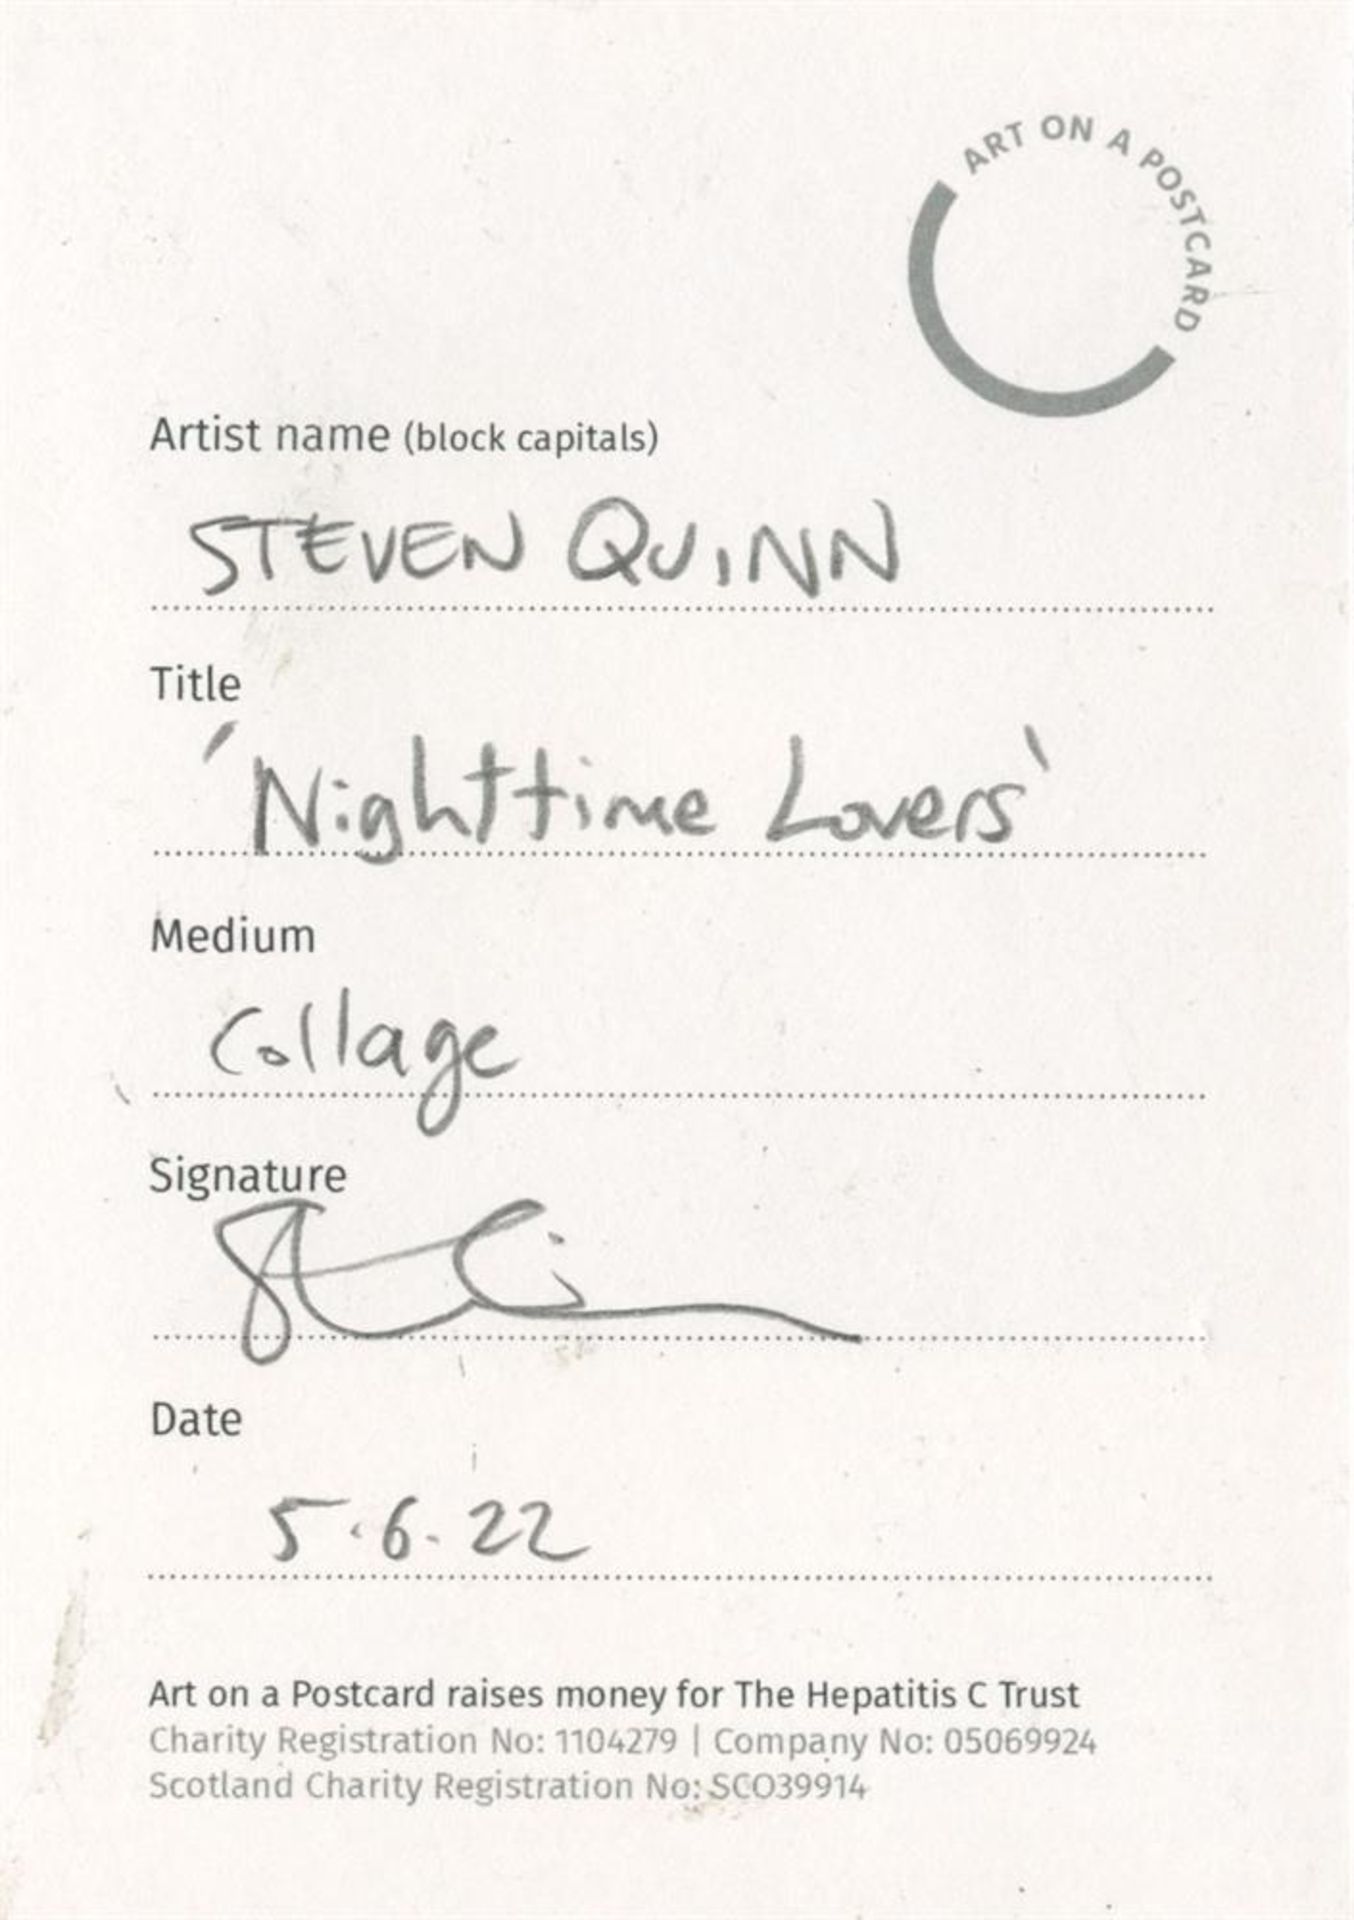 Steven Quinn, Nighttime Lovers, 2022 - Image 2 of 3